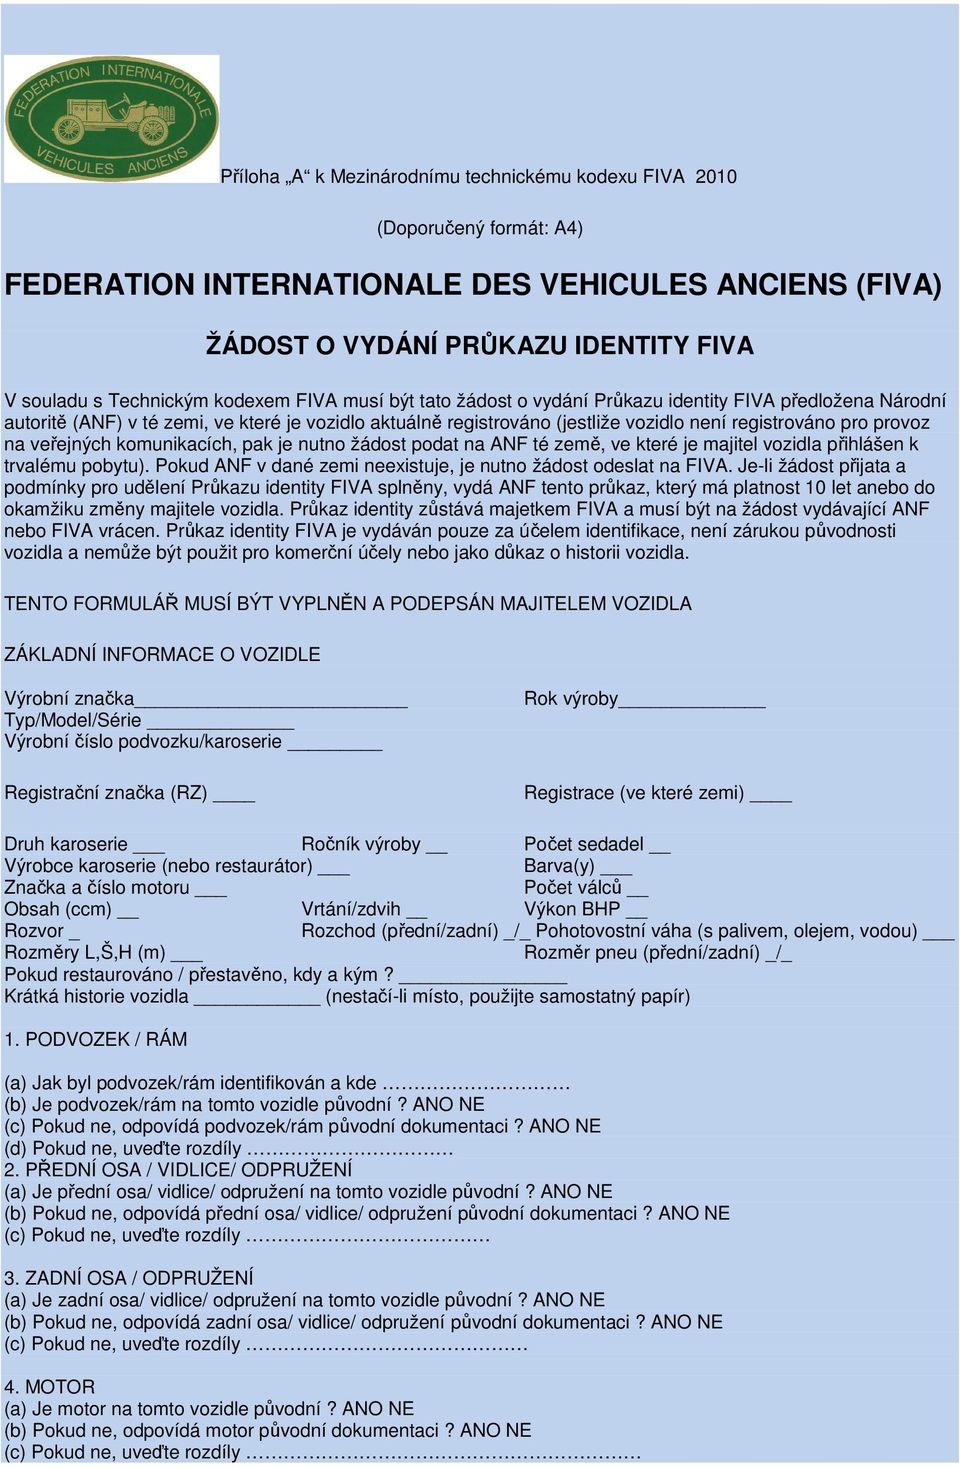 na veřejných komunikacích, pak je nutno žádost podat na ANF té země, ve které je majitel vozidla přihlášen k trvalému pobytu). Pokud ANF v dané zemi neexistuje, je nutno žádost odeslat na FIVA.